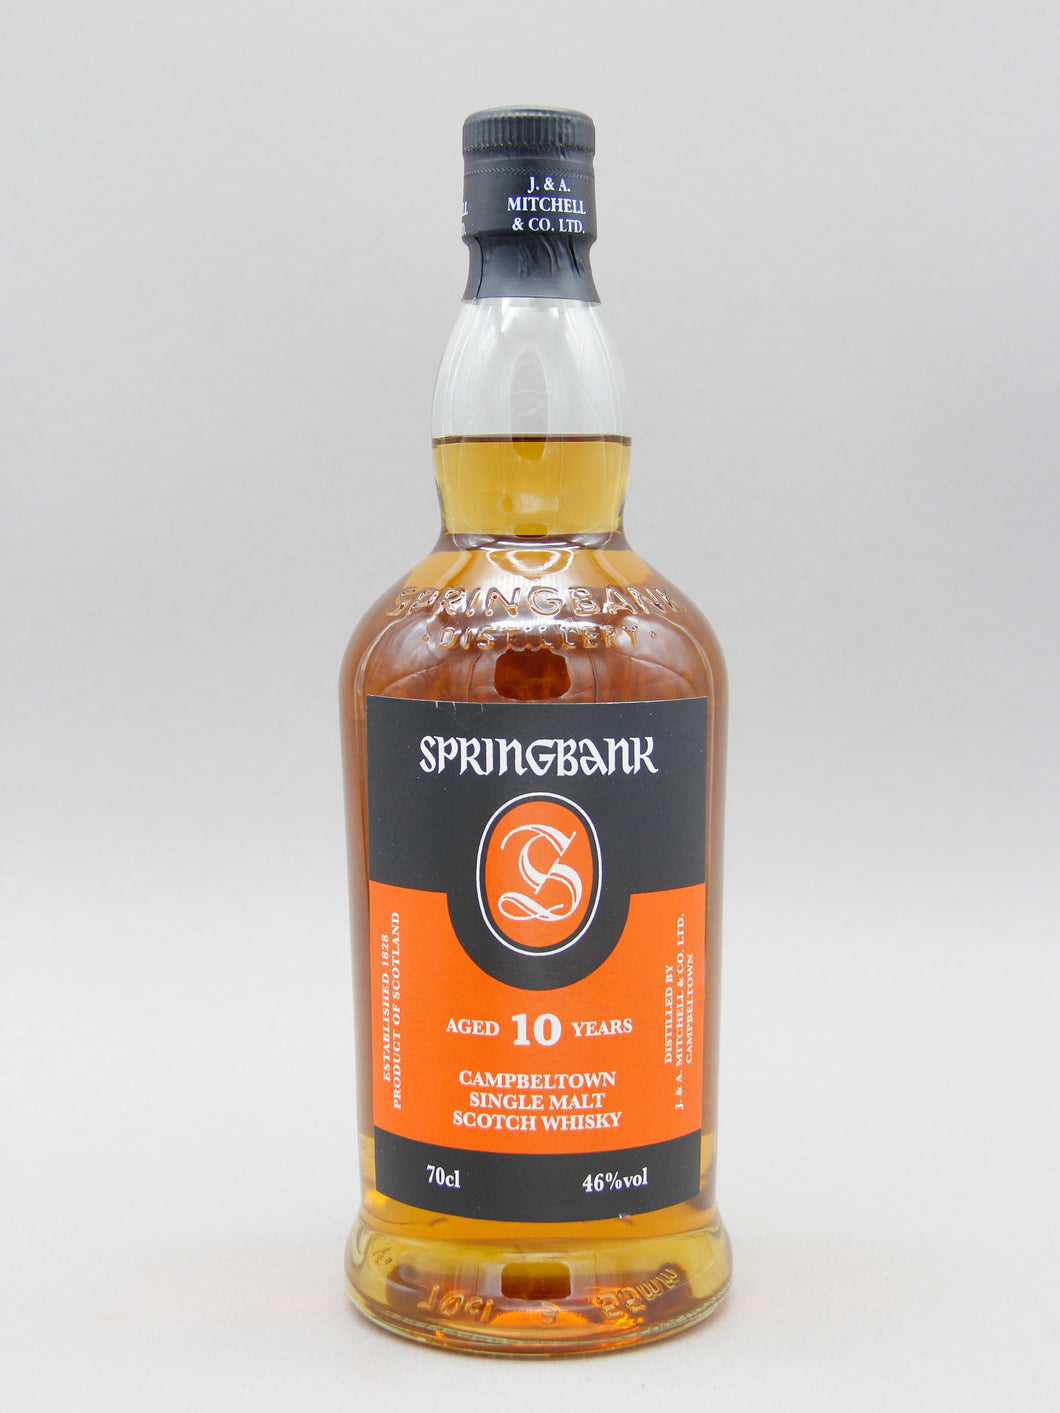 Springbank 10 Year, Campbeltown Single Malt Scotch Whisky (46%, 70cl)